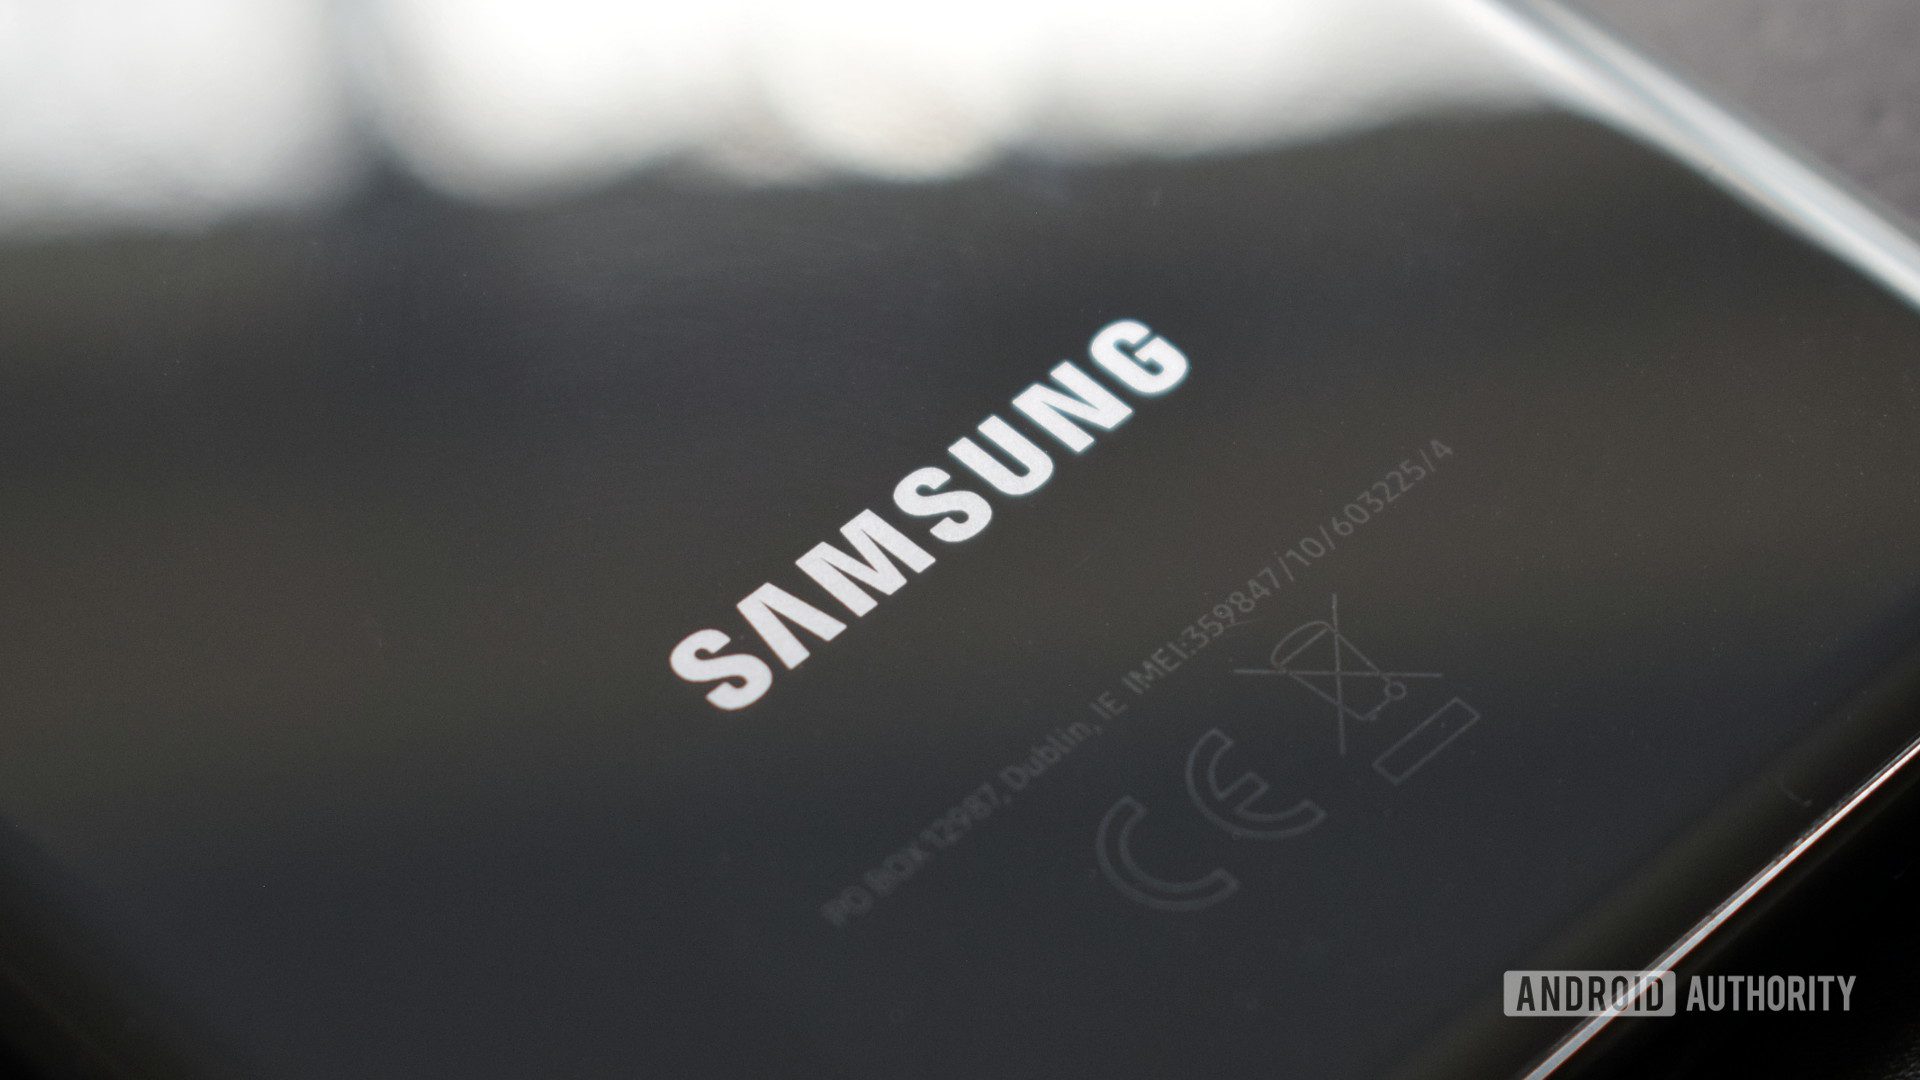 Samsung’un bir Snapdragon çırpıcı sunabileceğini düşünüyorsunuz